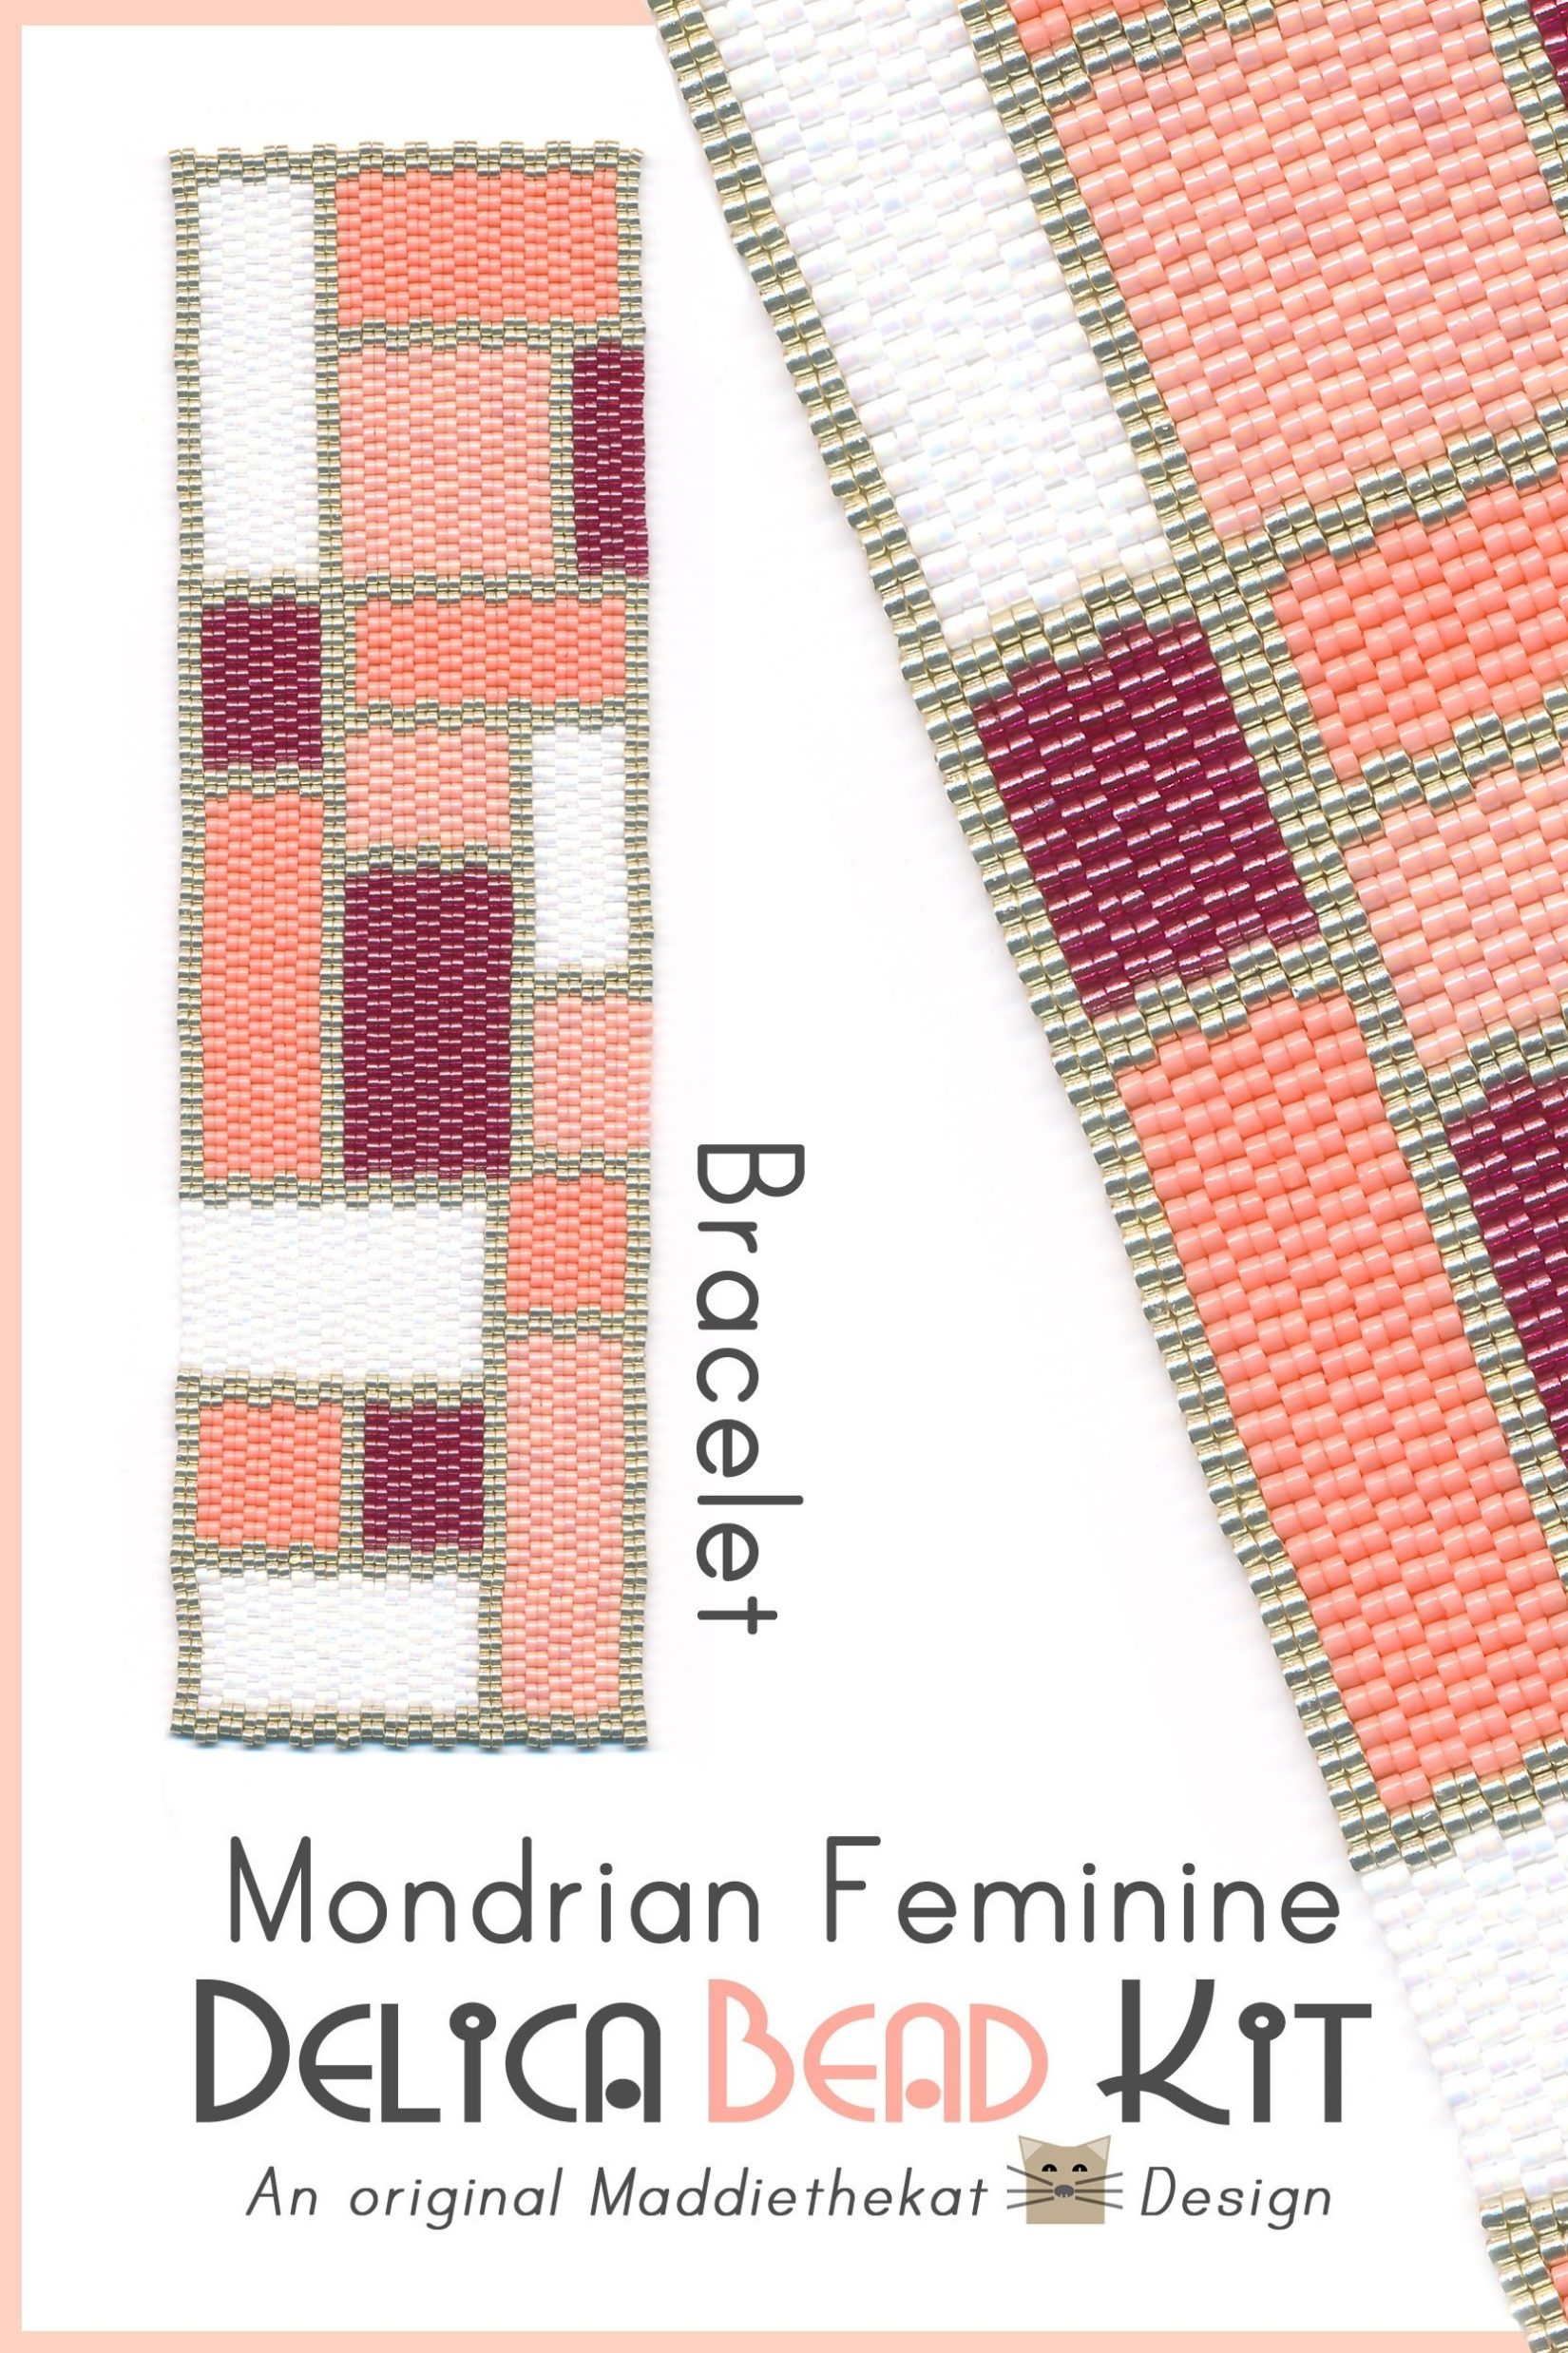 Mondrian Feminine Wide Cuff Bracelet 2-Drop Peyote Bead Pattern PDF